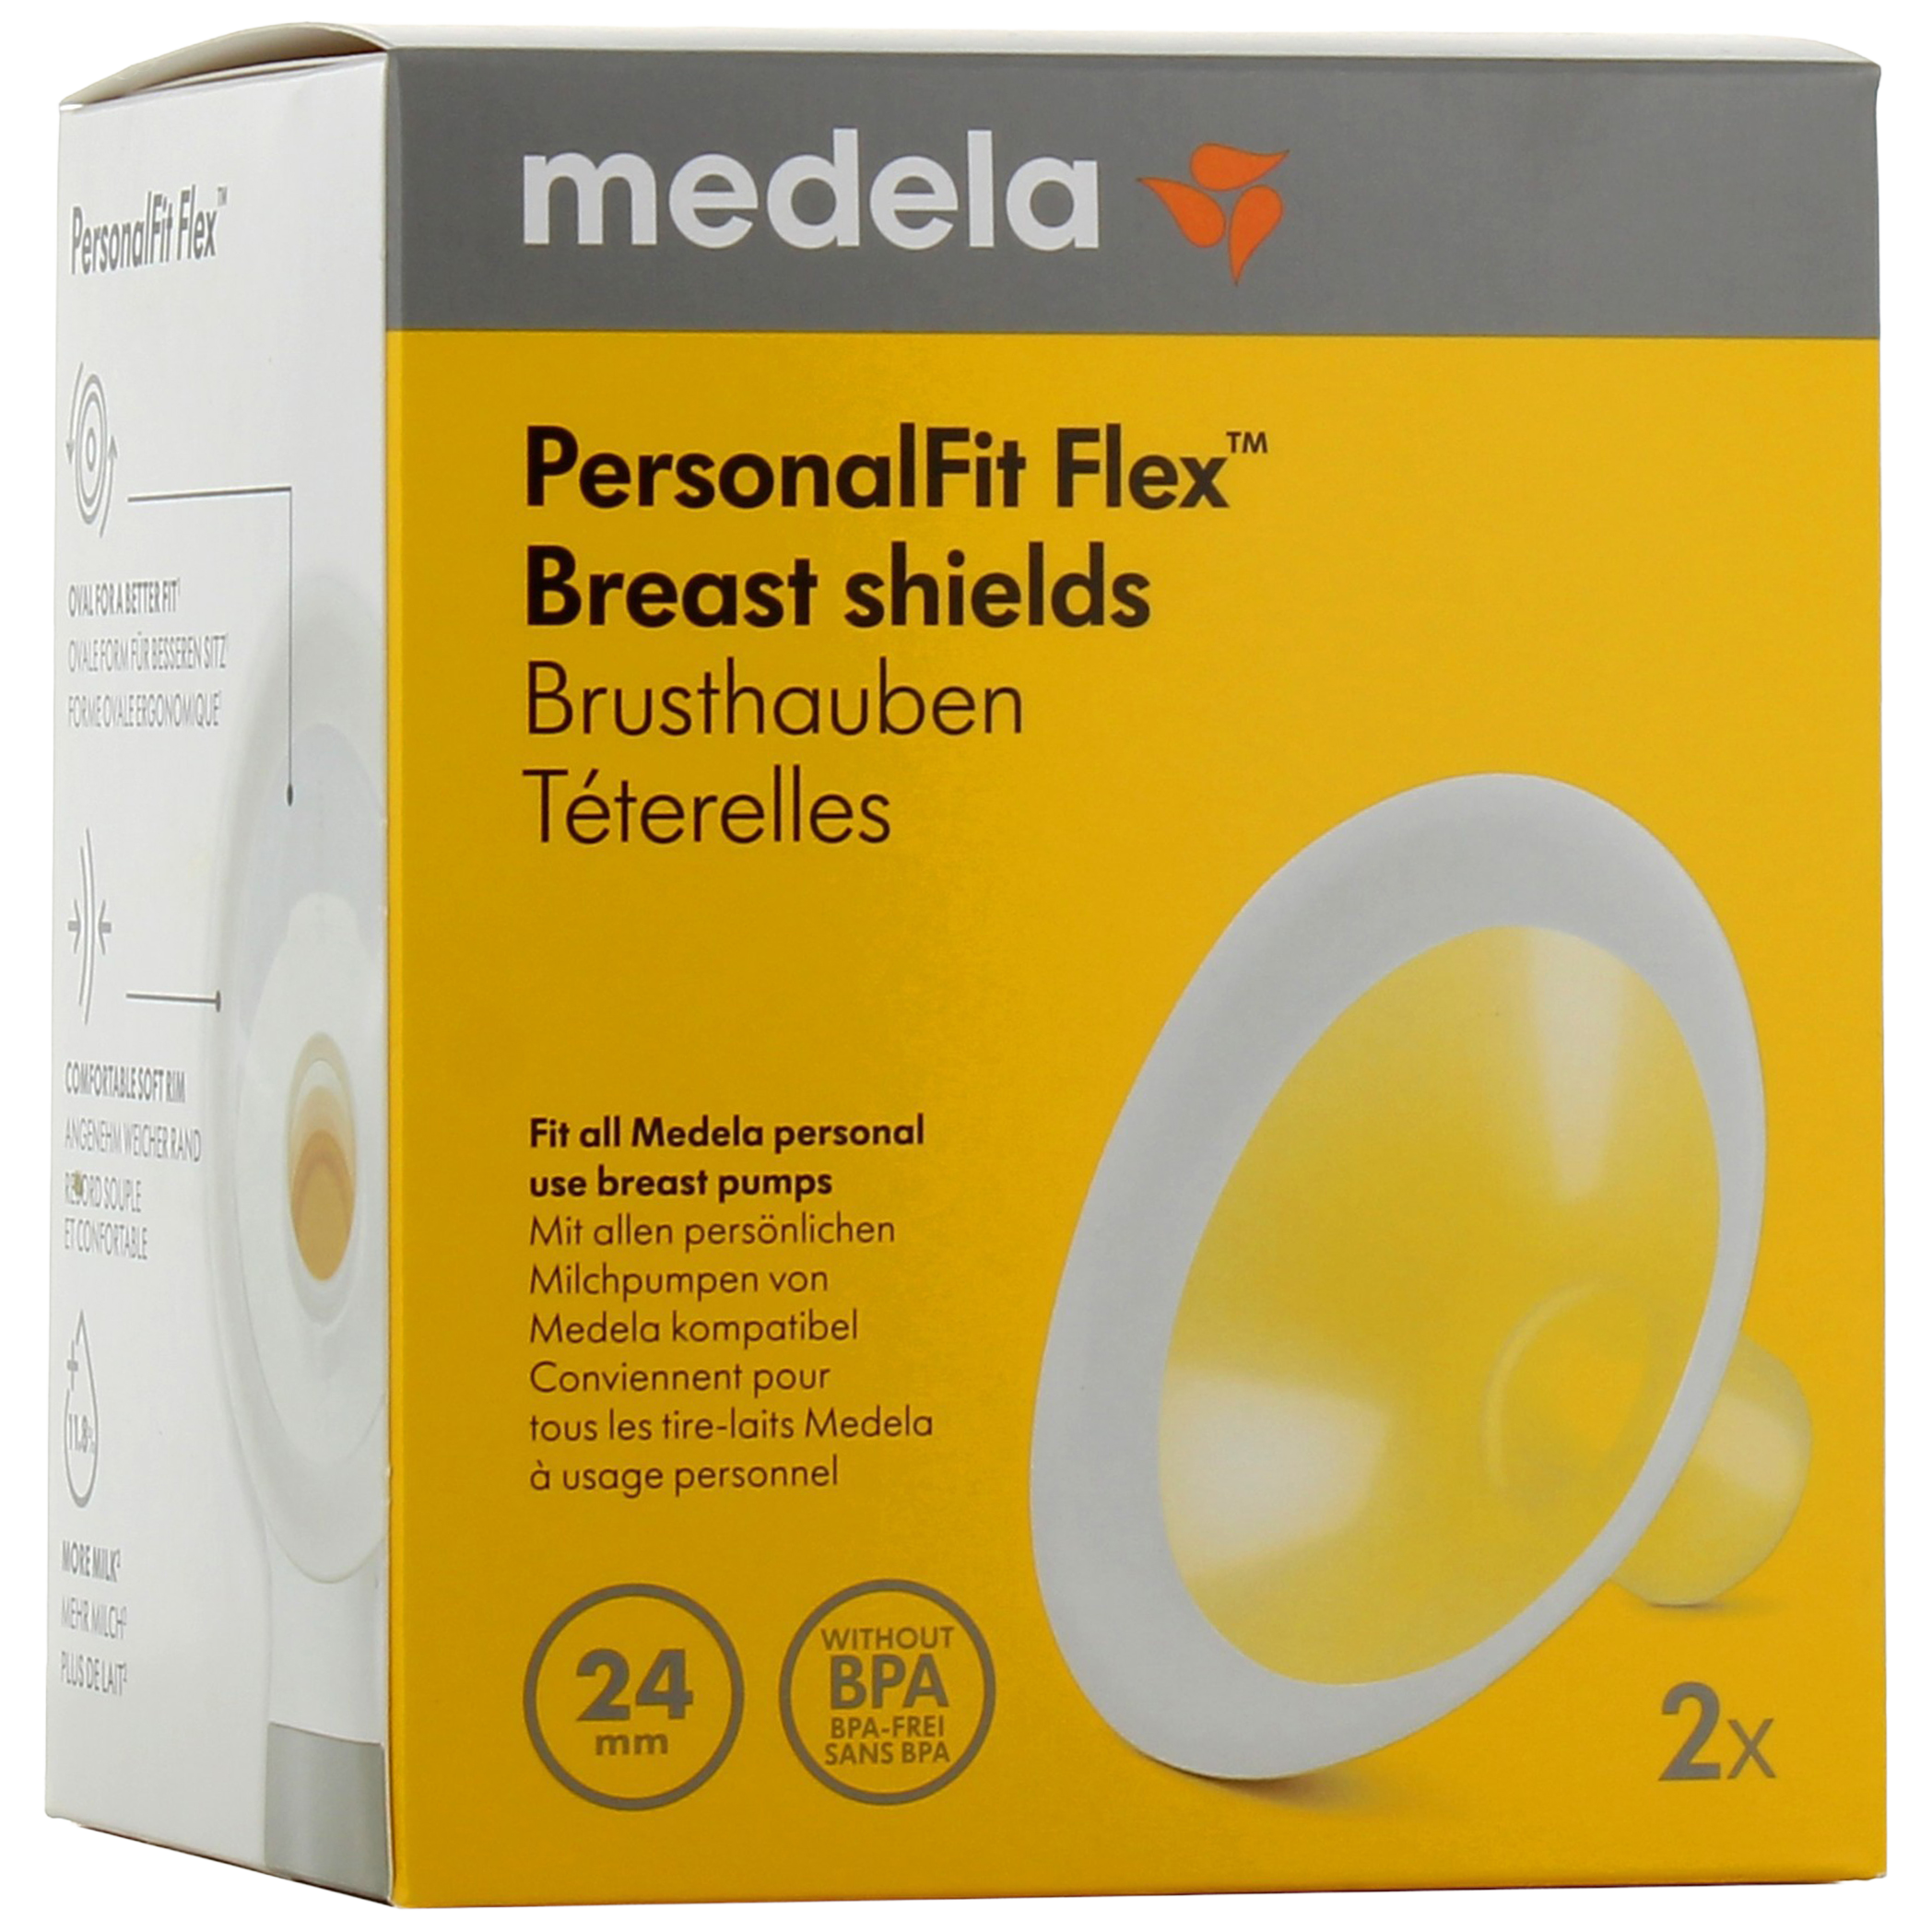 Medela téterelles PersonalFit Flex pour tire-lait